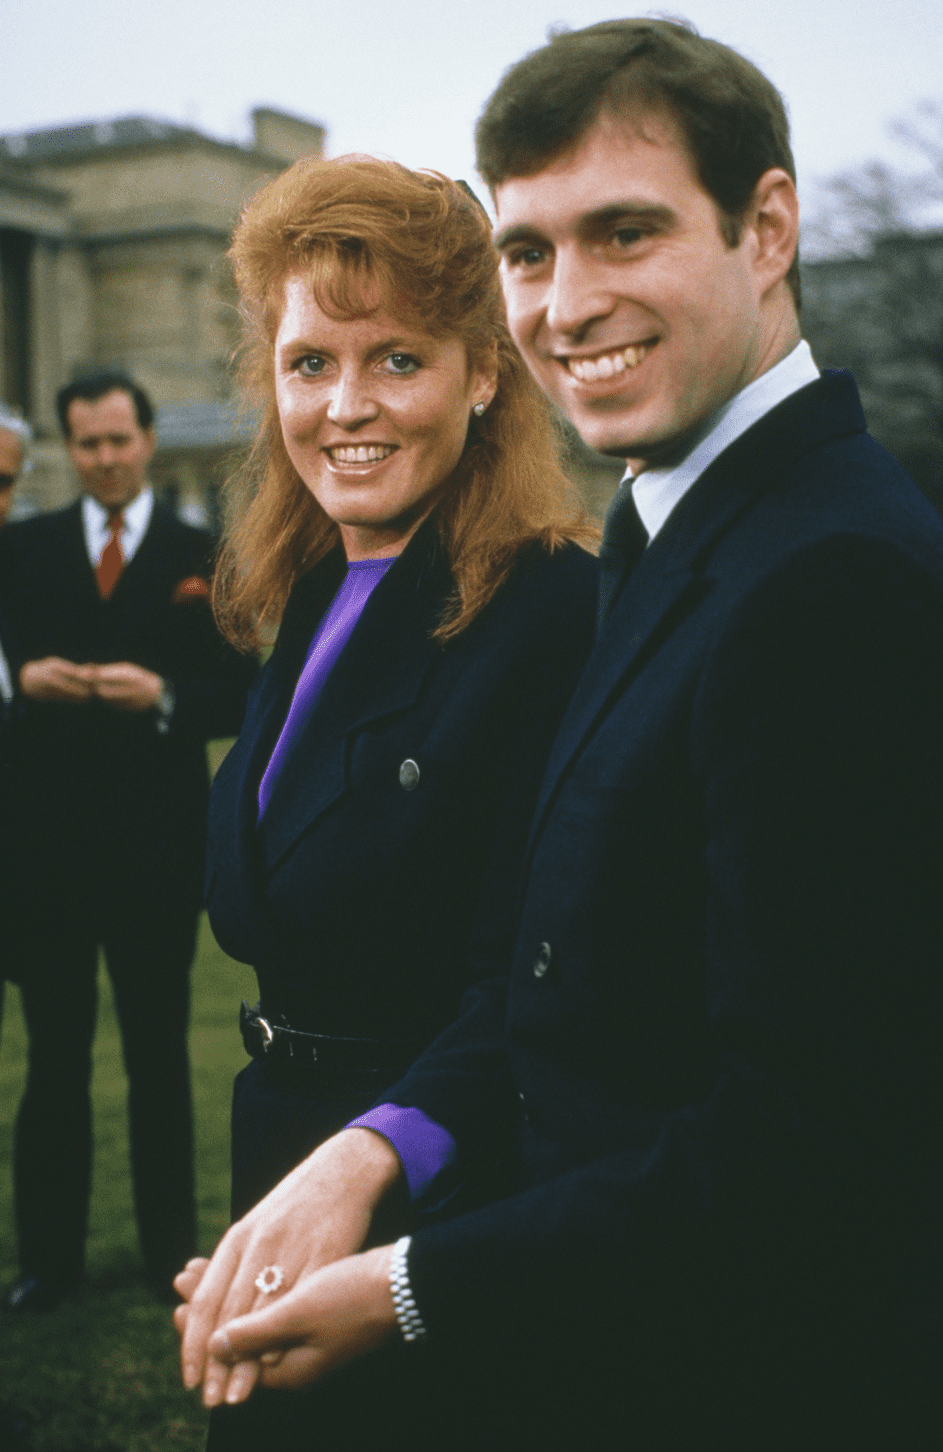 Prinz Andrew mit Sarah Ferguson im Buckingham Palace nach der Bekanntgabe der Verlobung am 17.03.86 in London. | Quelle: Getty Images